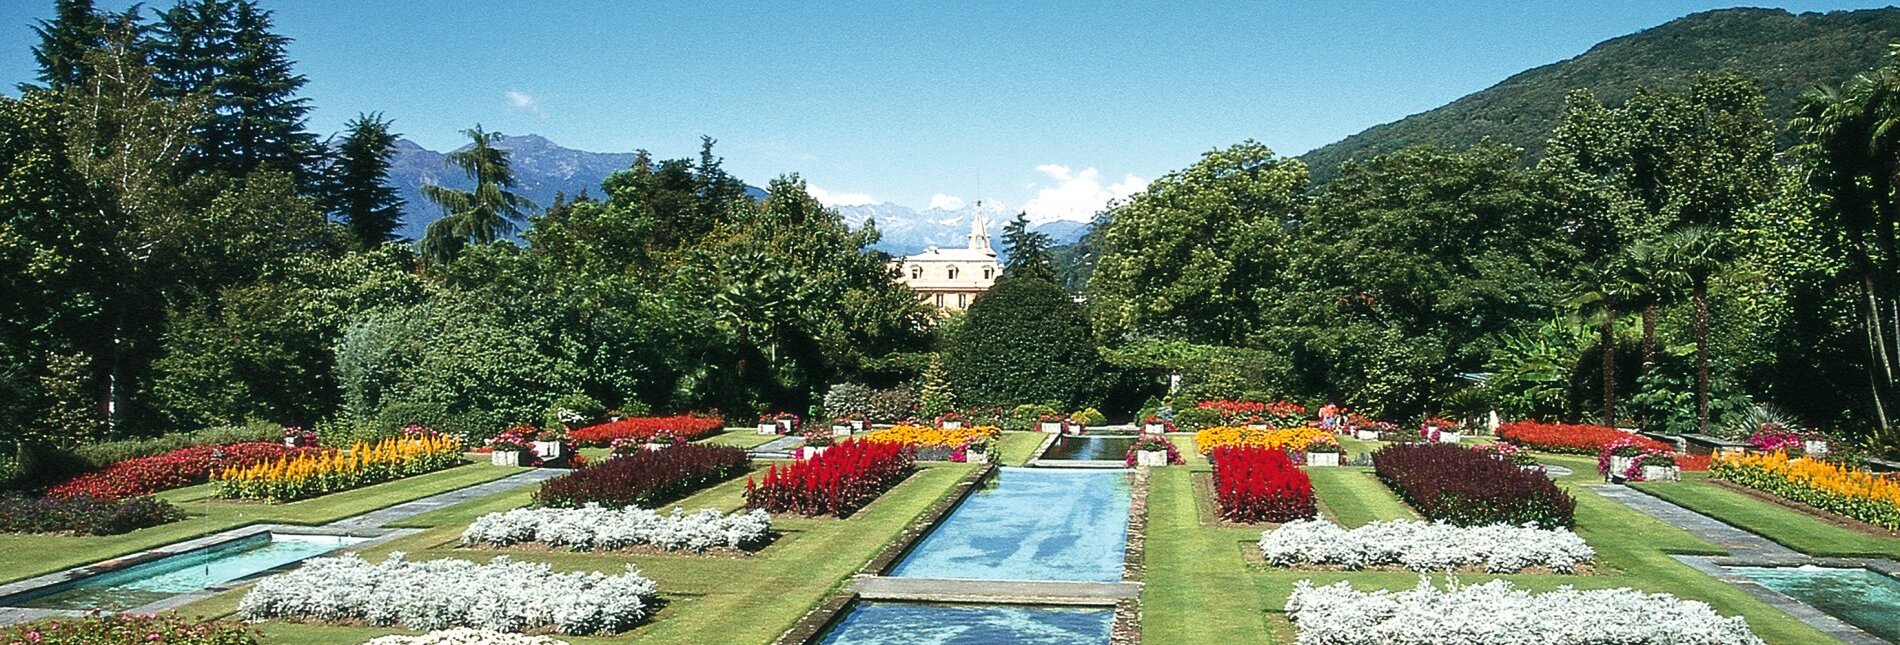 Botanischer Garten der Villa Taranto